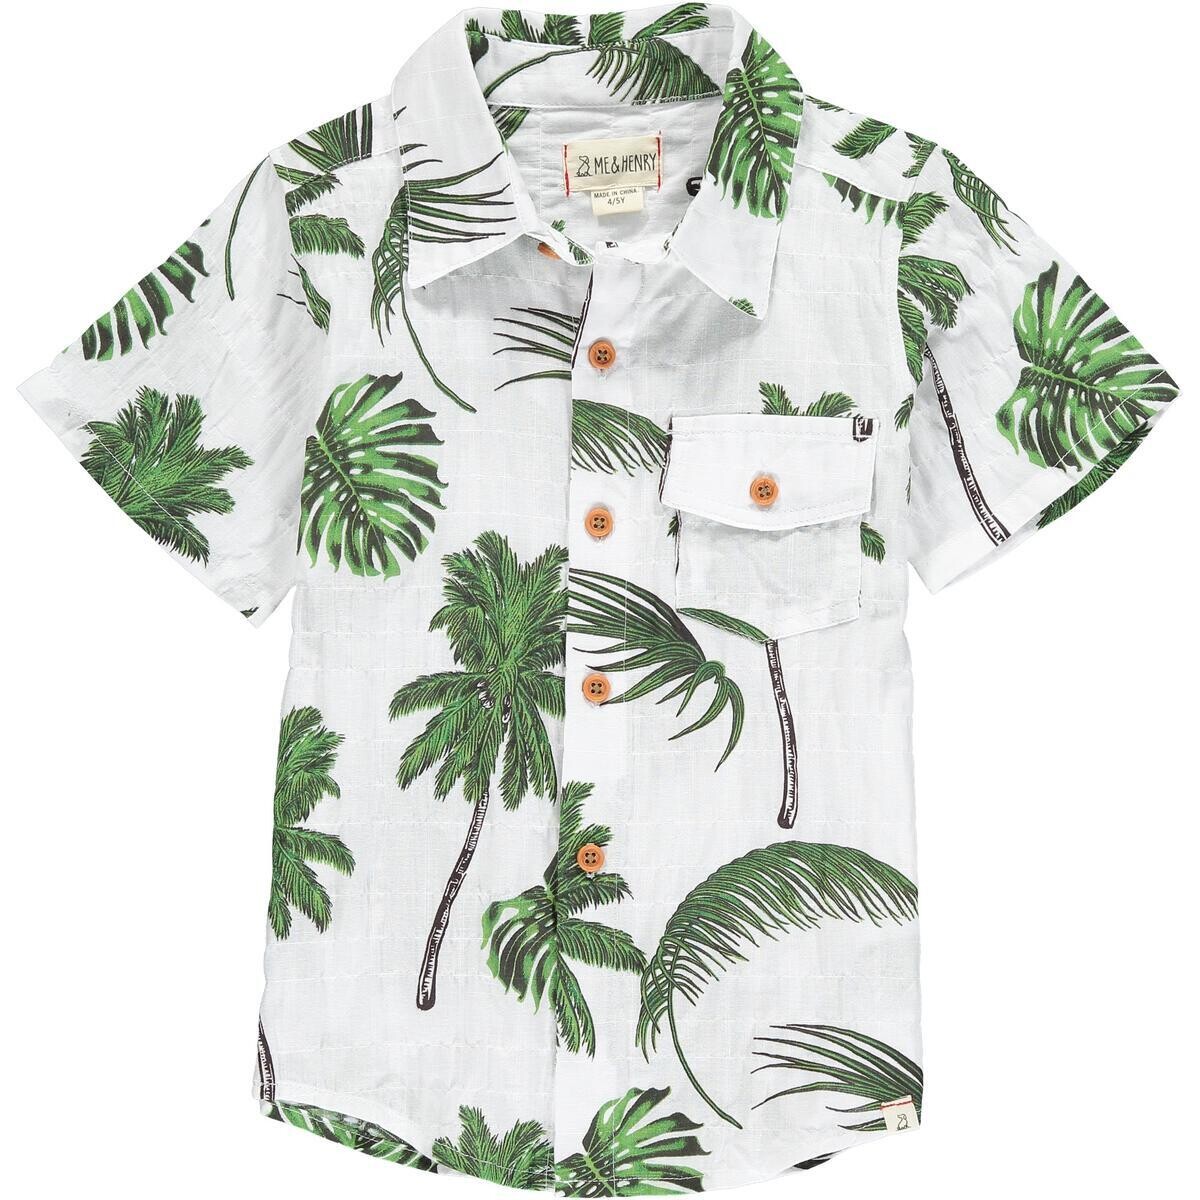 Me & Henry Boys Aloha Palm Shirt 1051a